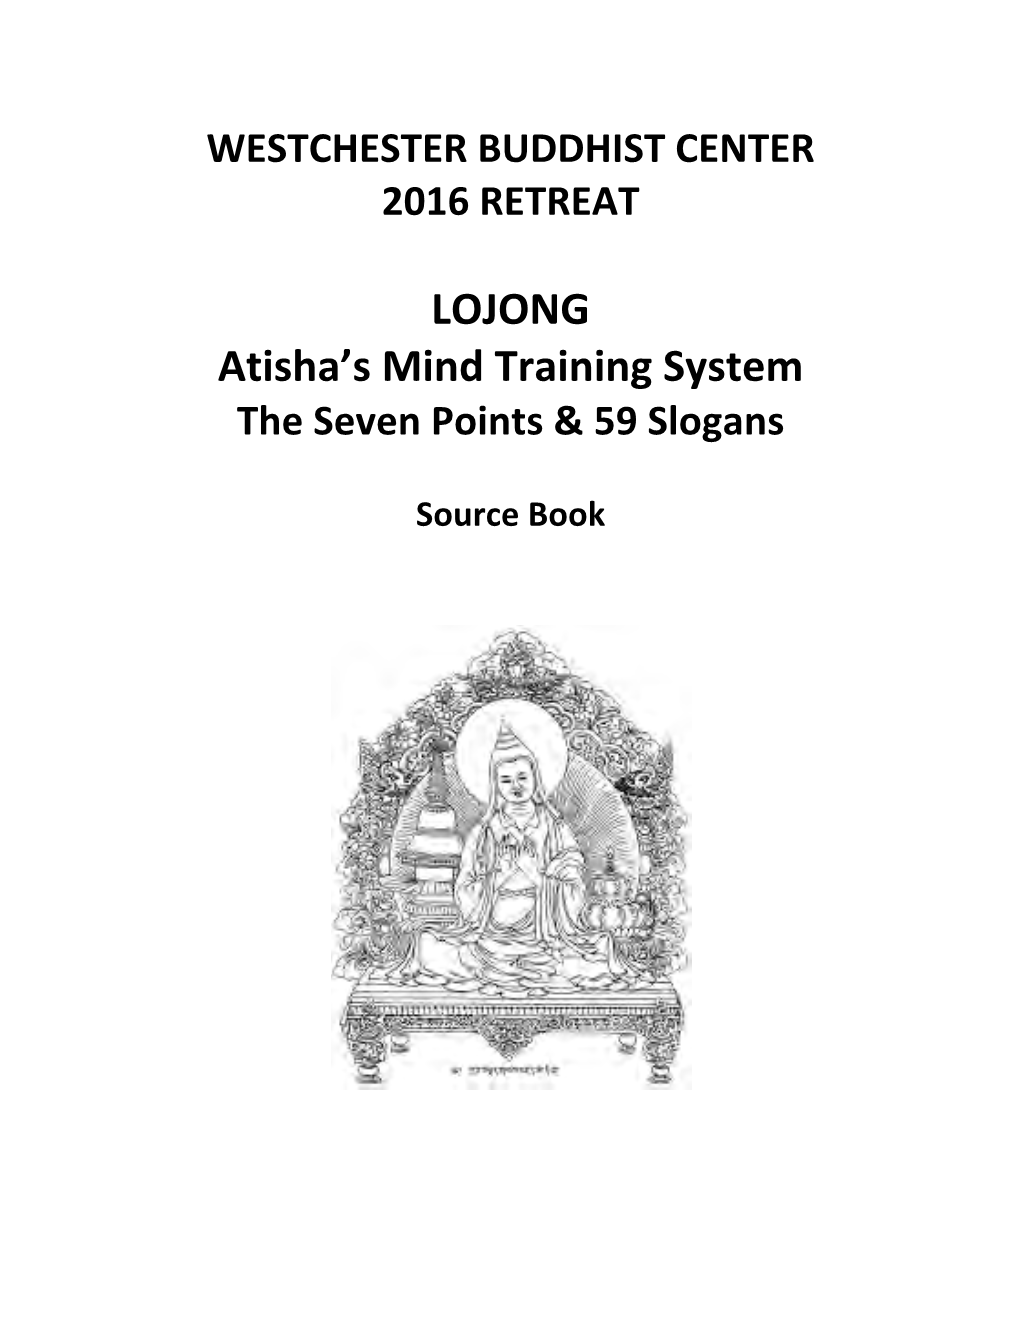 LOJONG Atisha's Mind Training System